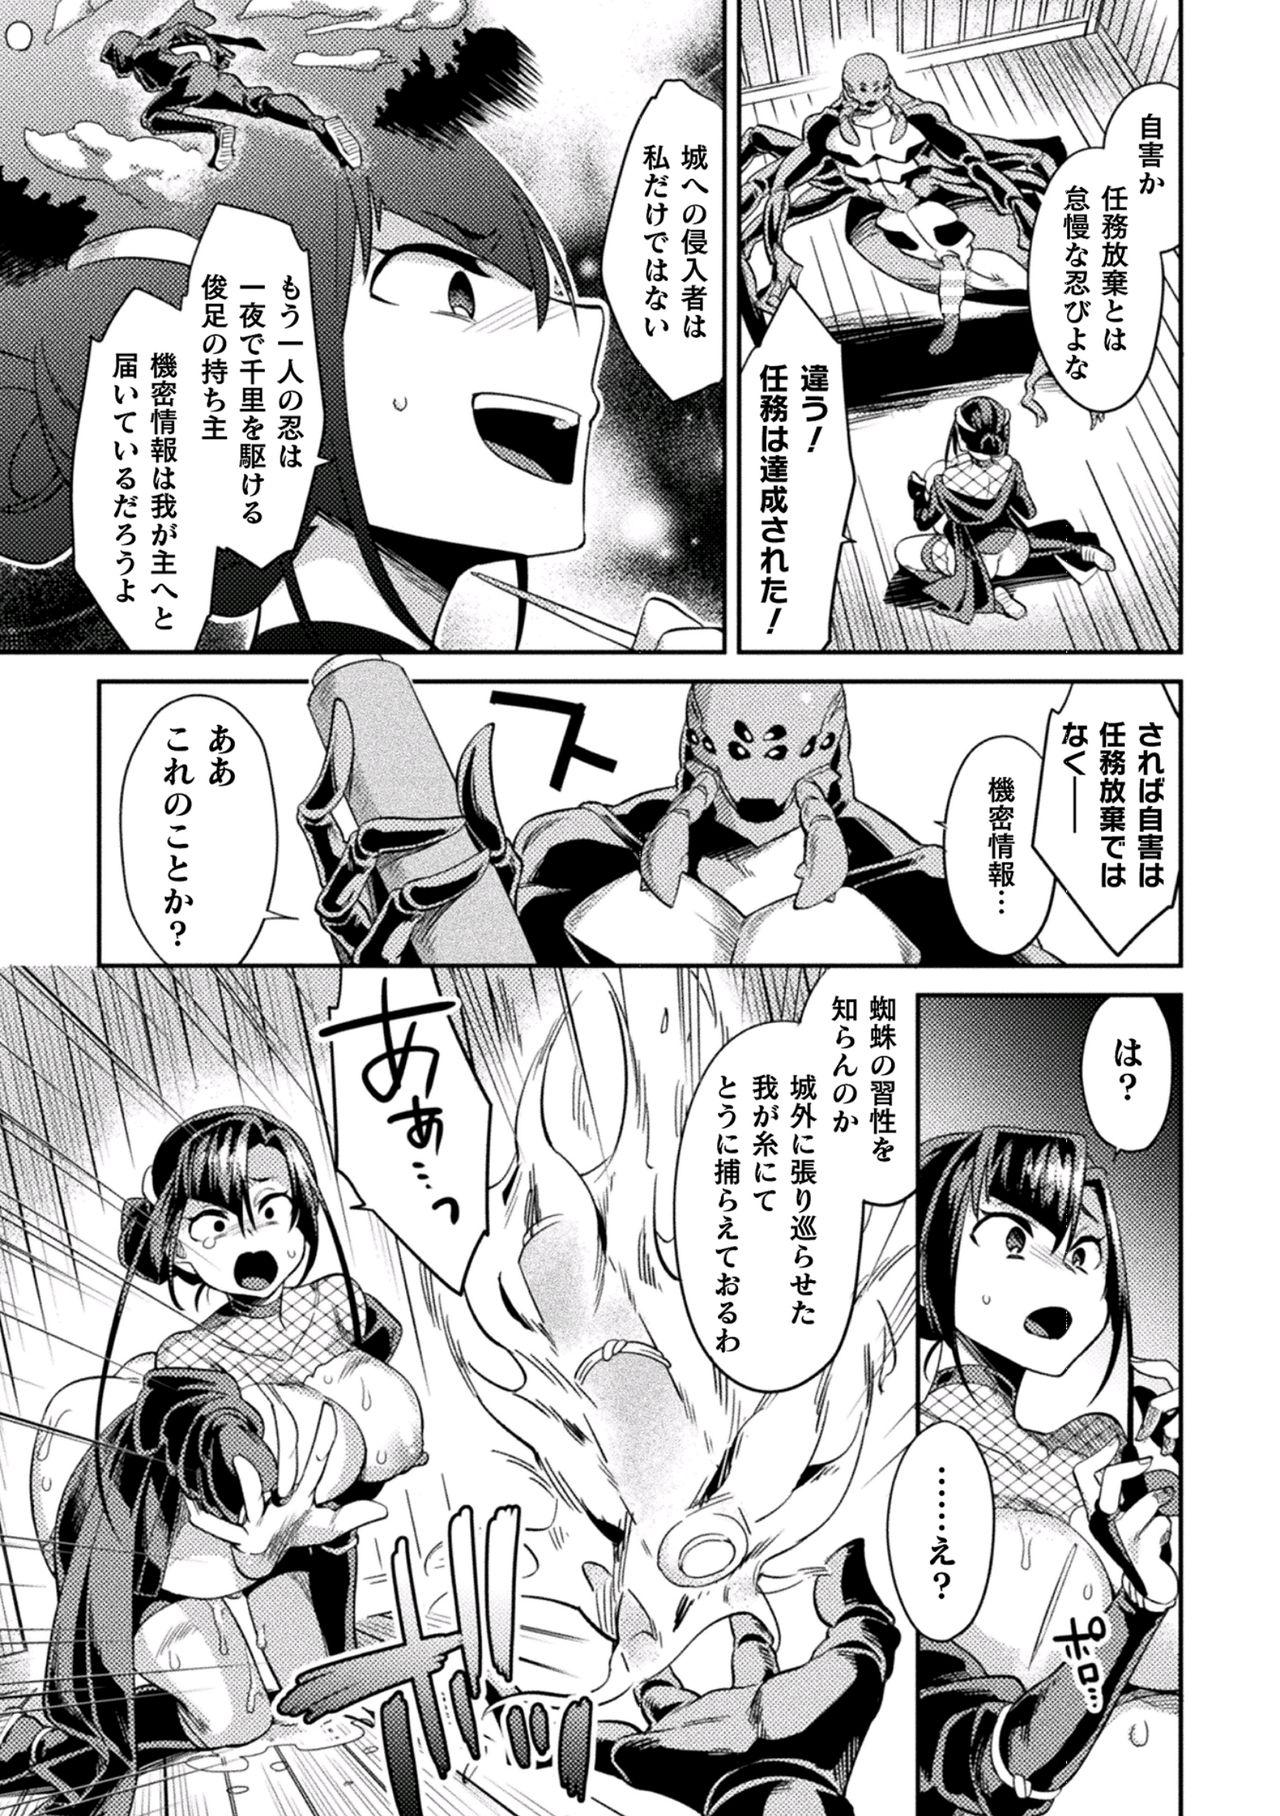 2D Comic Magazine Inmon wo Tsukerareta Bishoujo-tachi ga Sanran Akume Ochi! Vol. 1 36